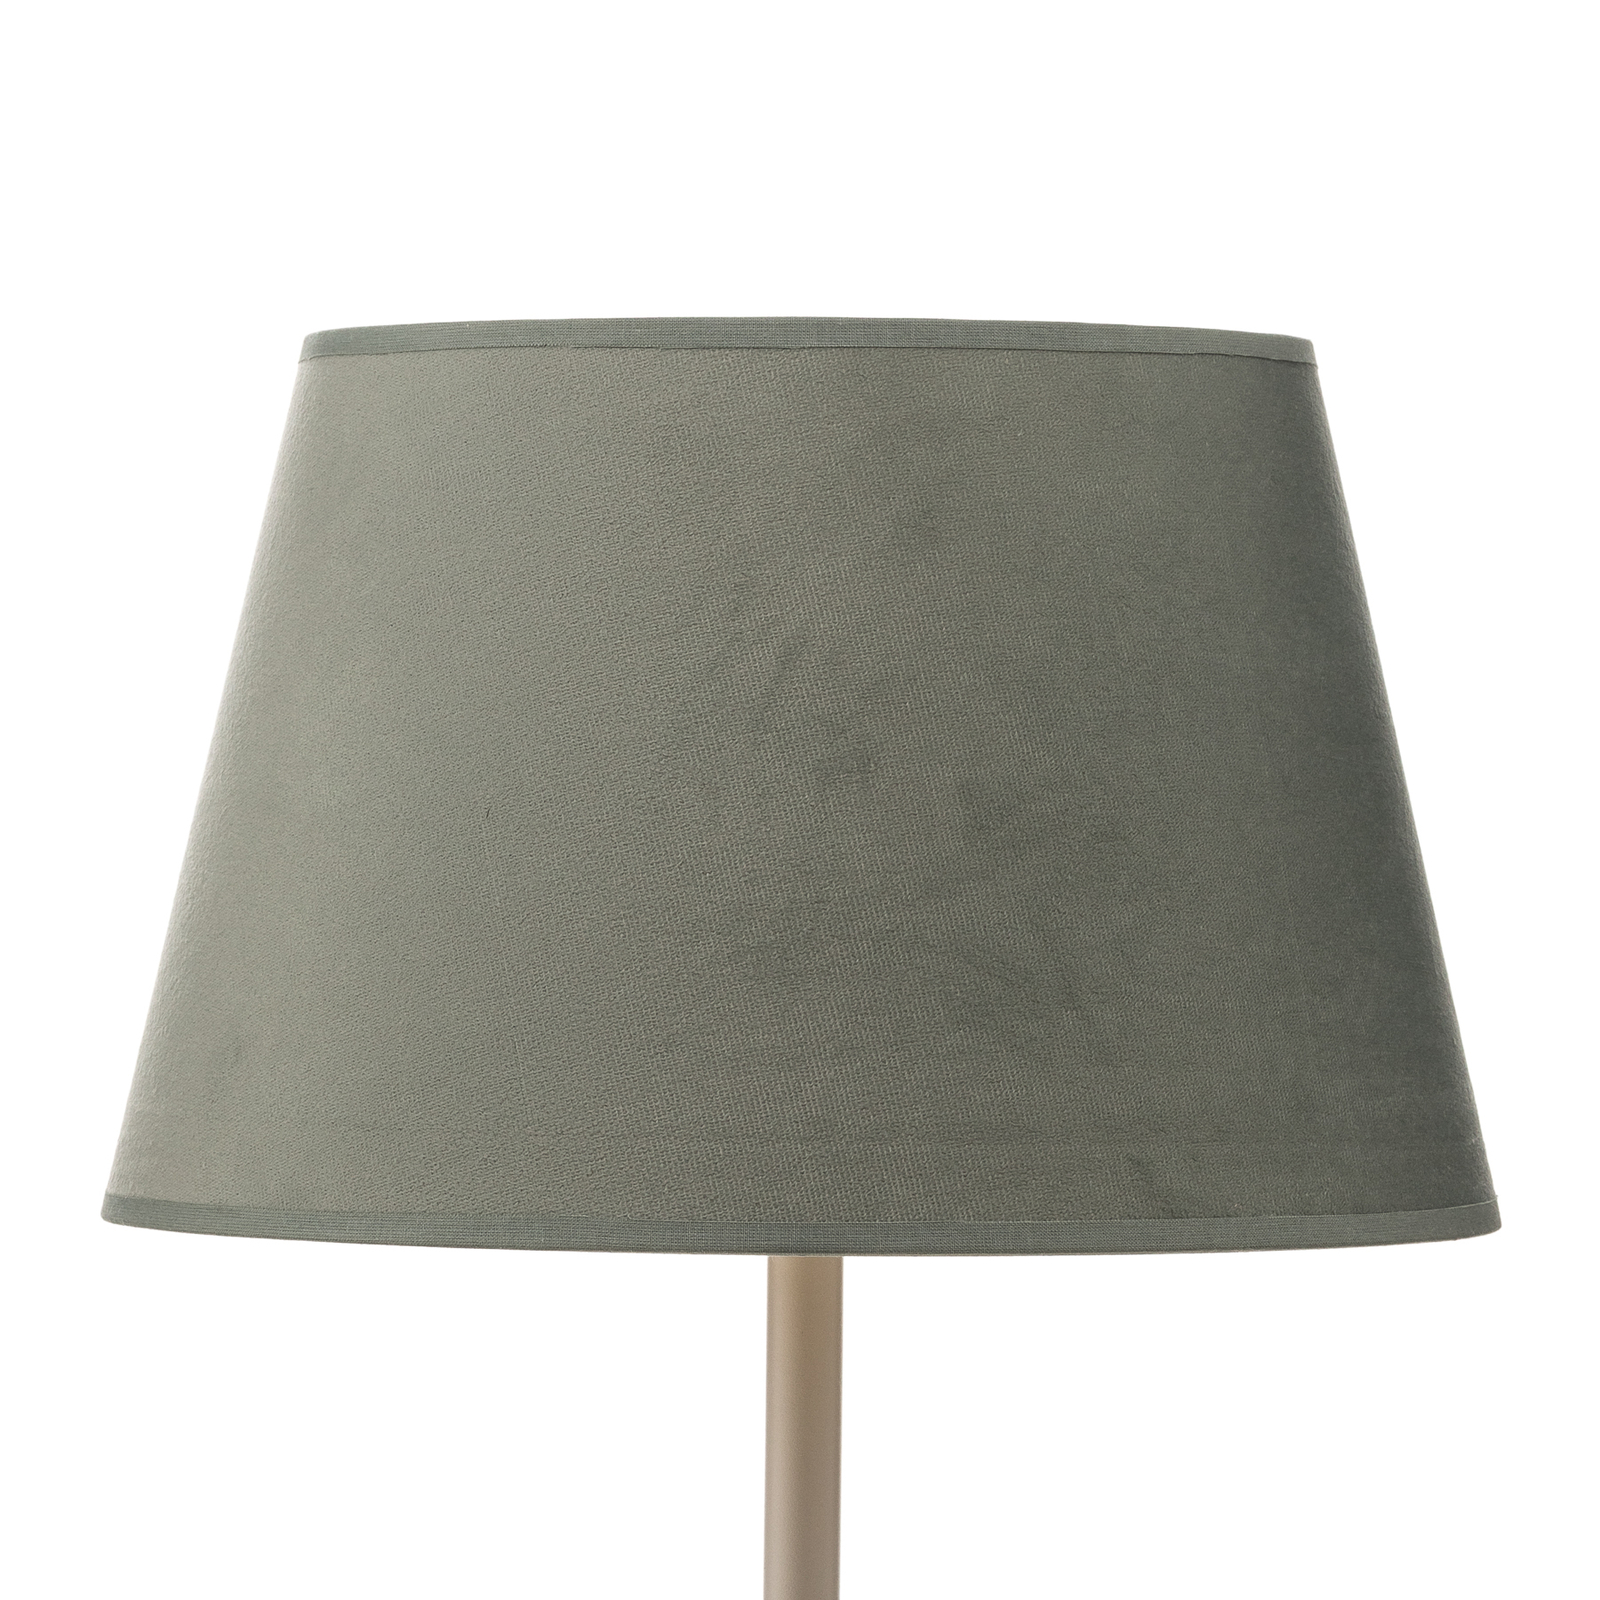 Cone lámpaernyő 18 cm magas, mentazöld/arany